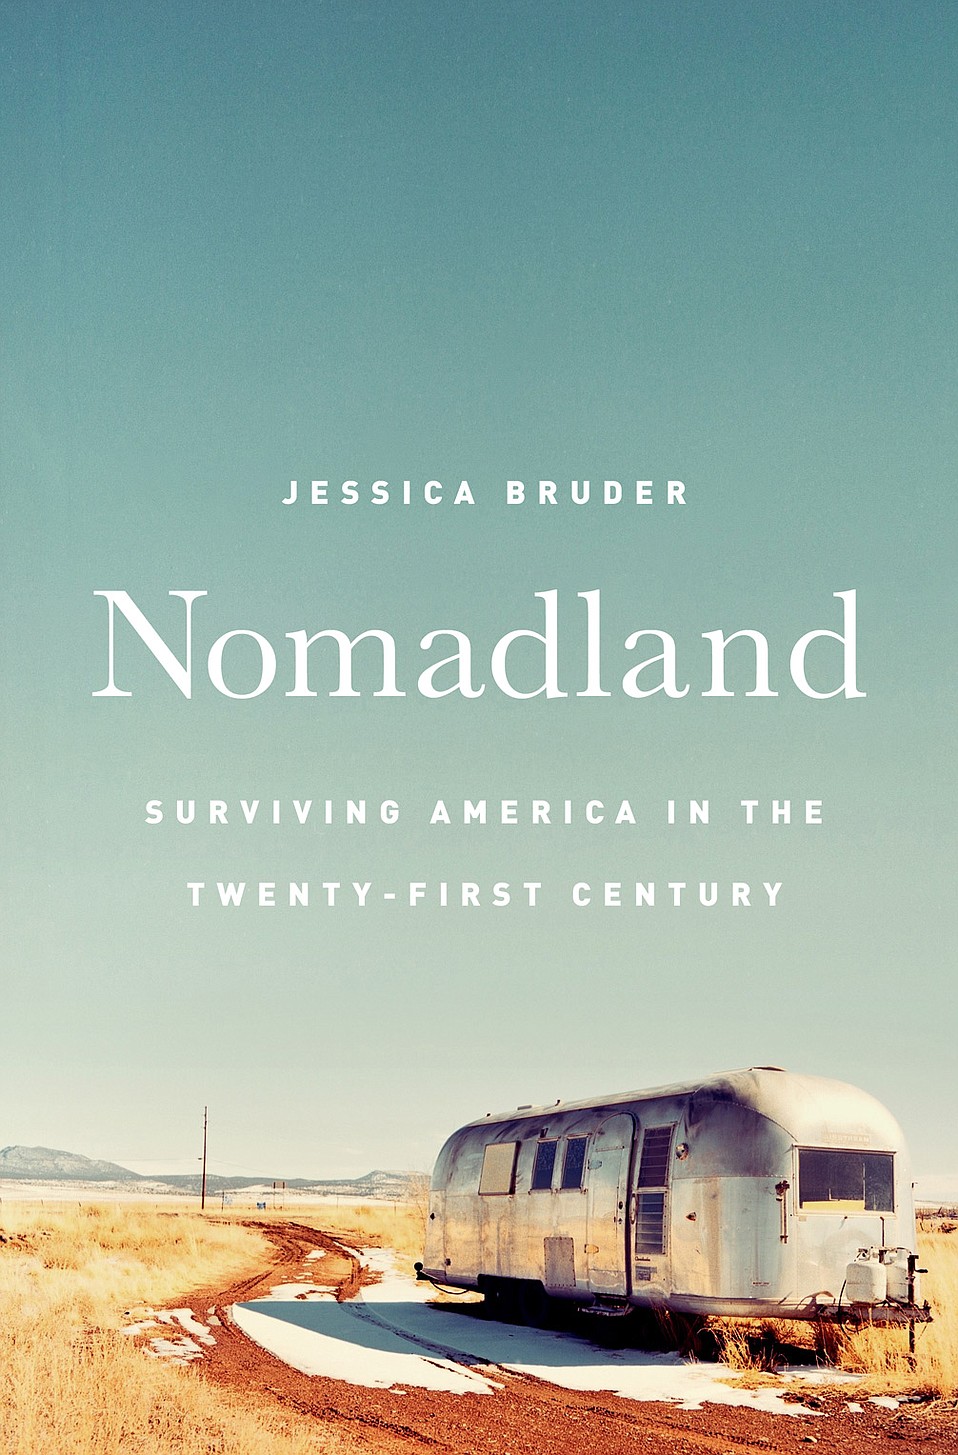 Jessica Bruder: Nomadland (2017)